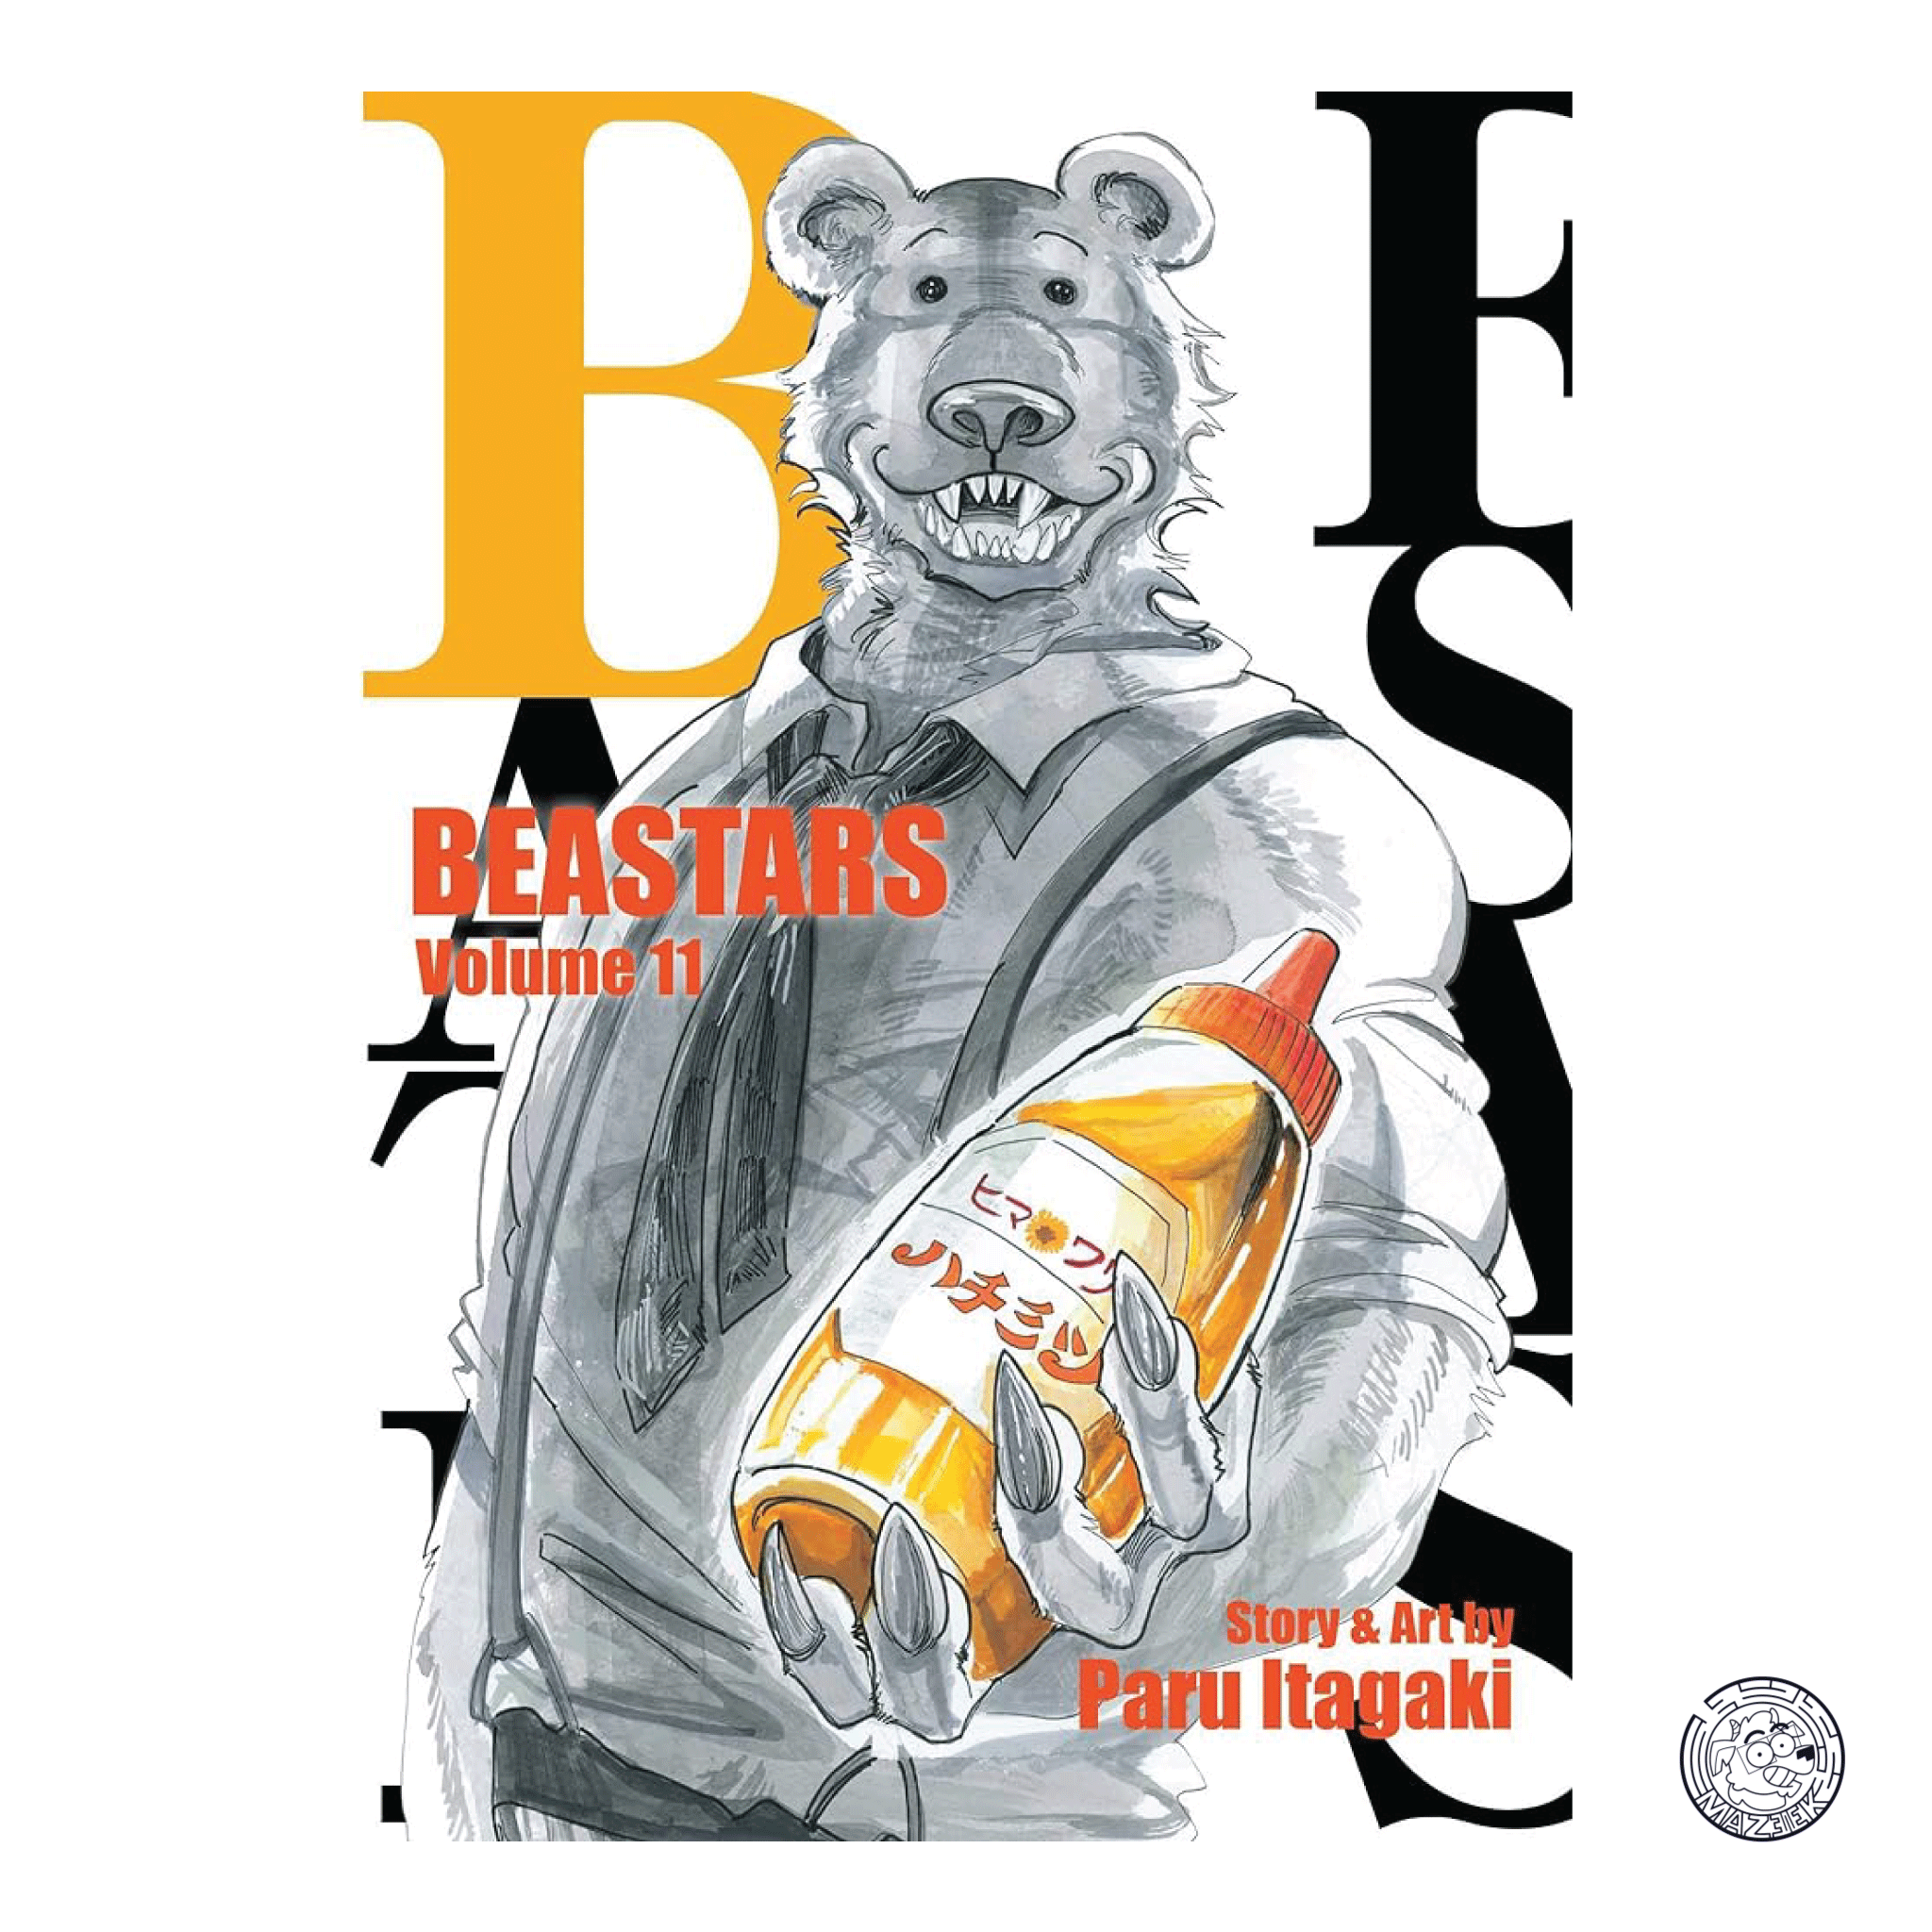 Beastars 11 - Reprint 1